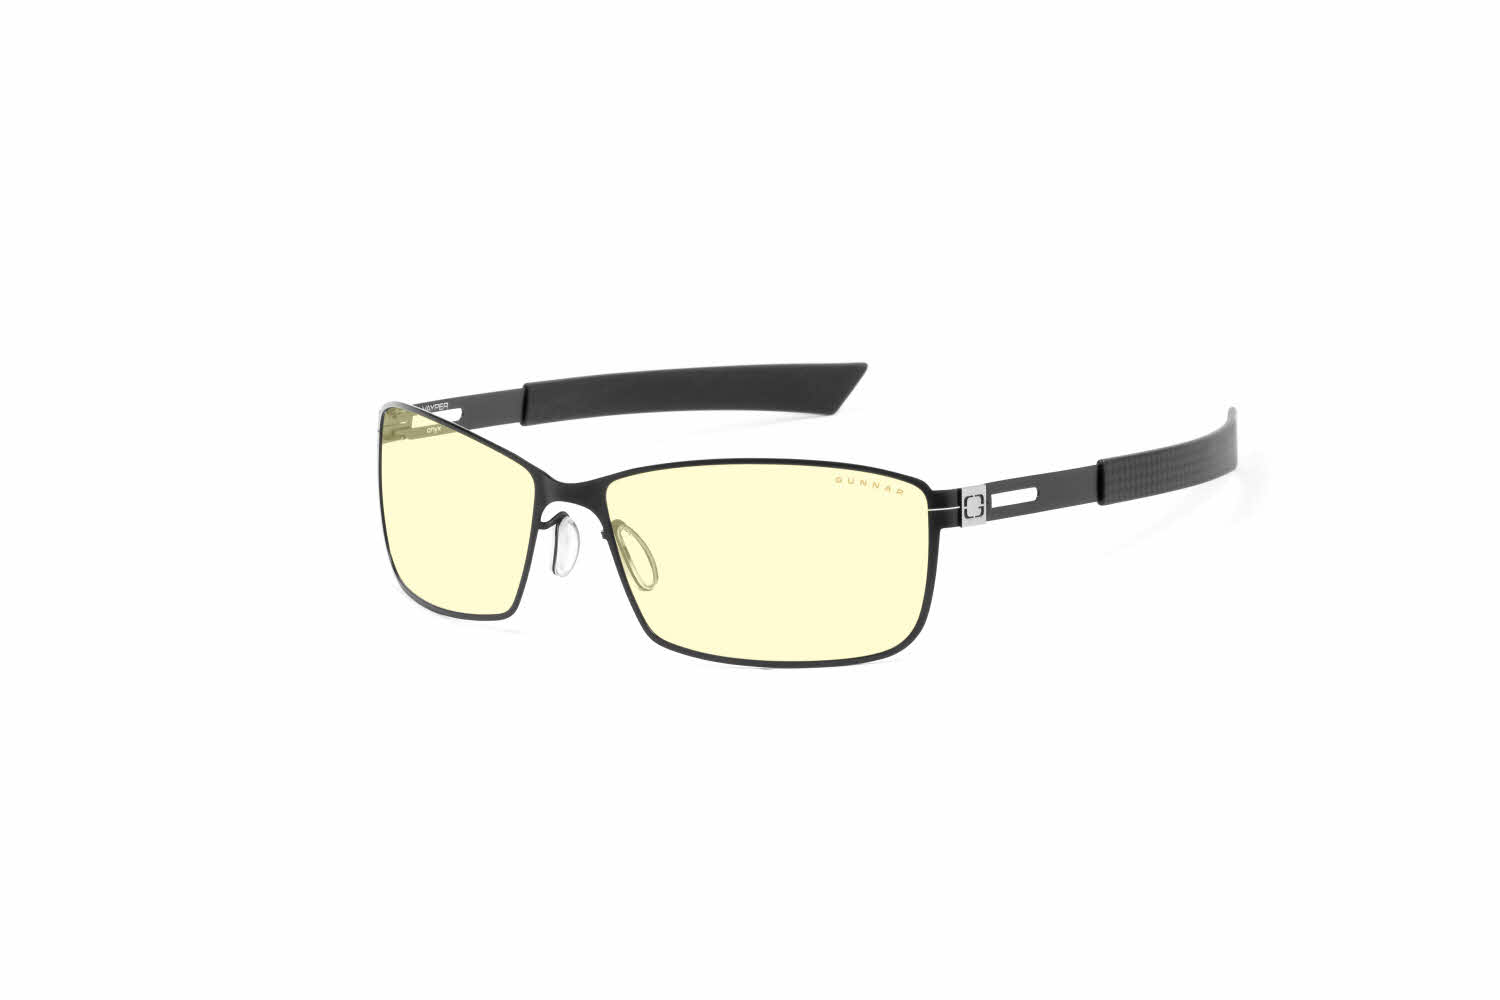 Vayper Eyeglasses | FramesDirect.com